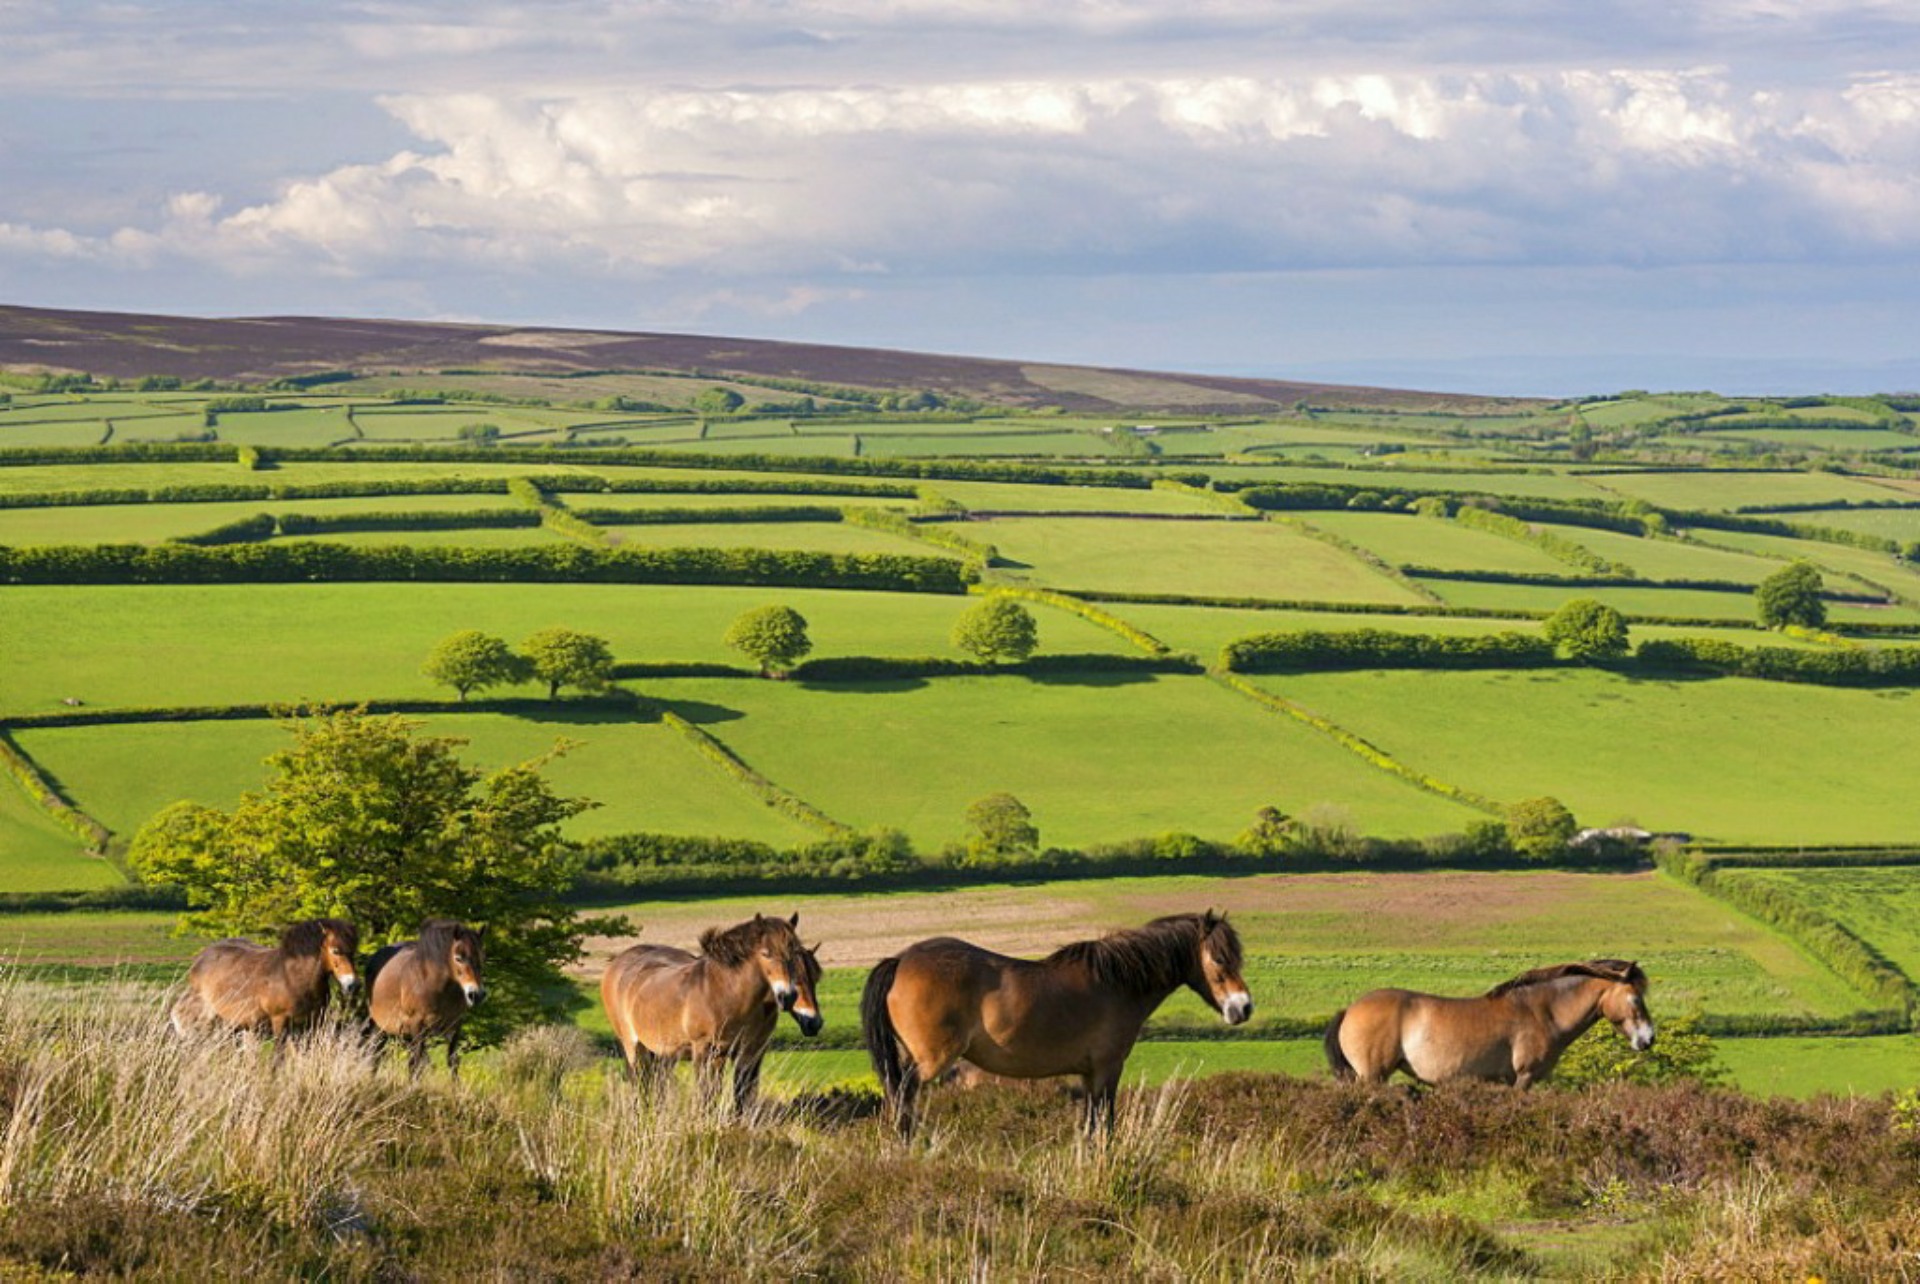 Exmoor ponies grazing nearby